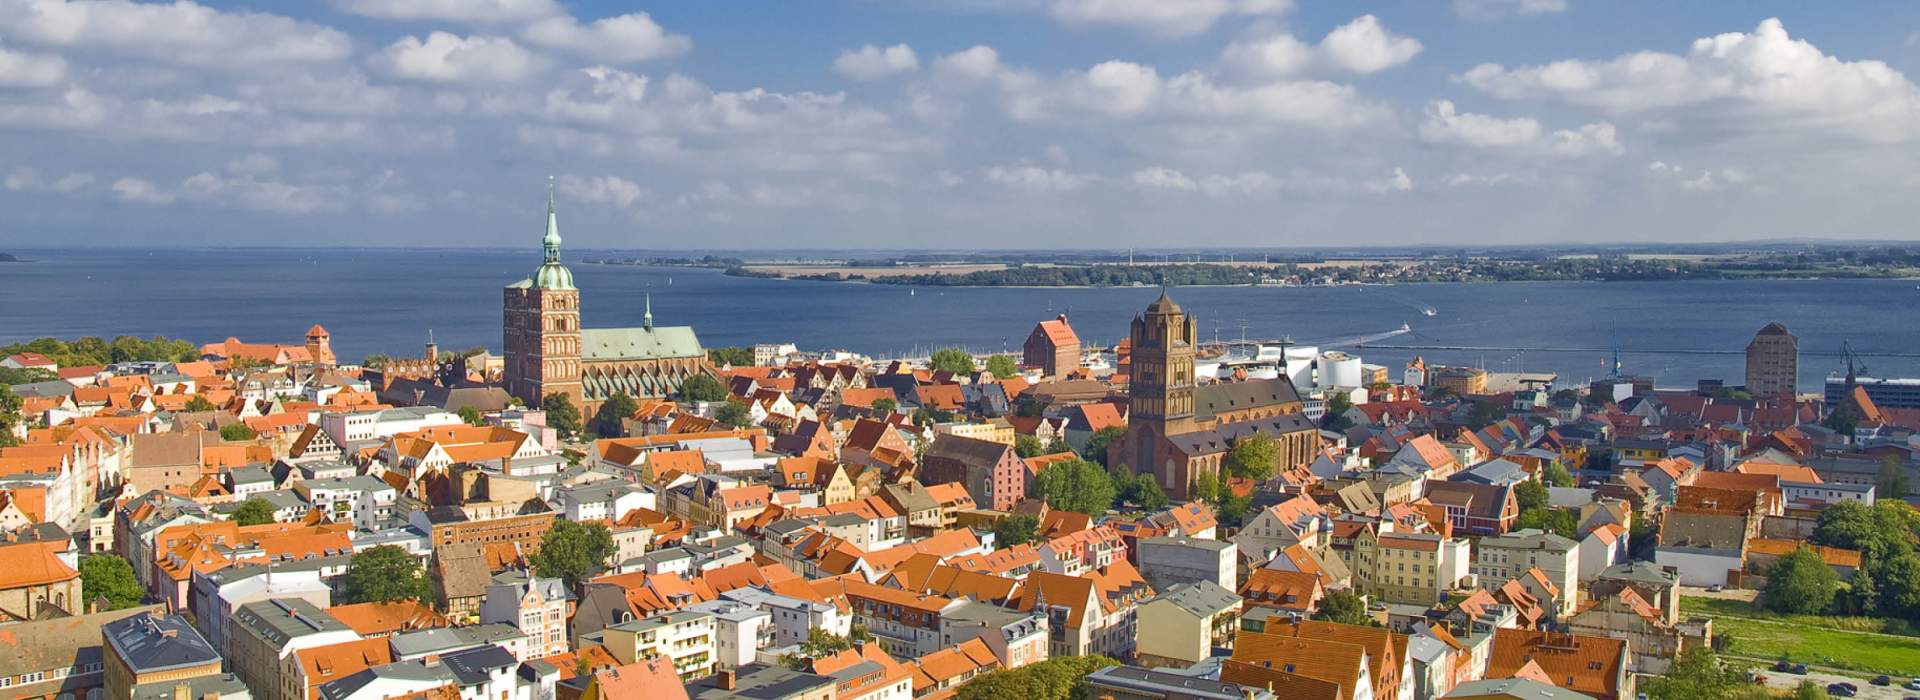 Stralsund Hotspots